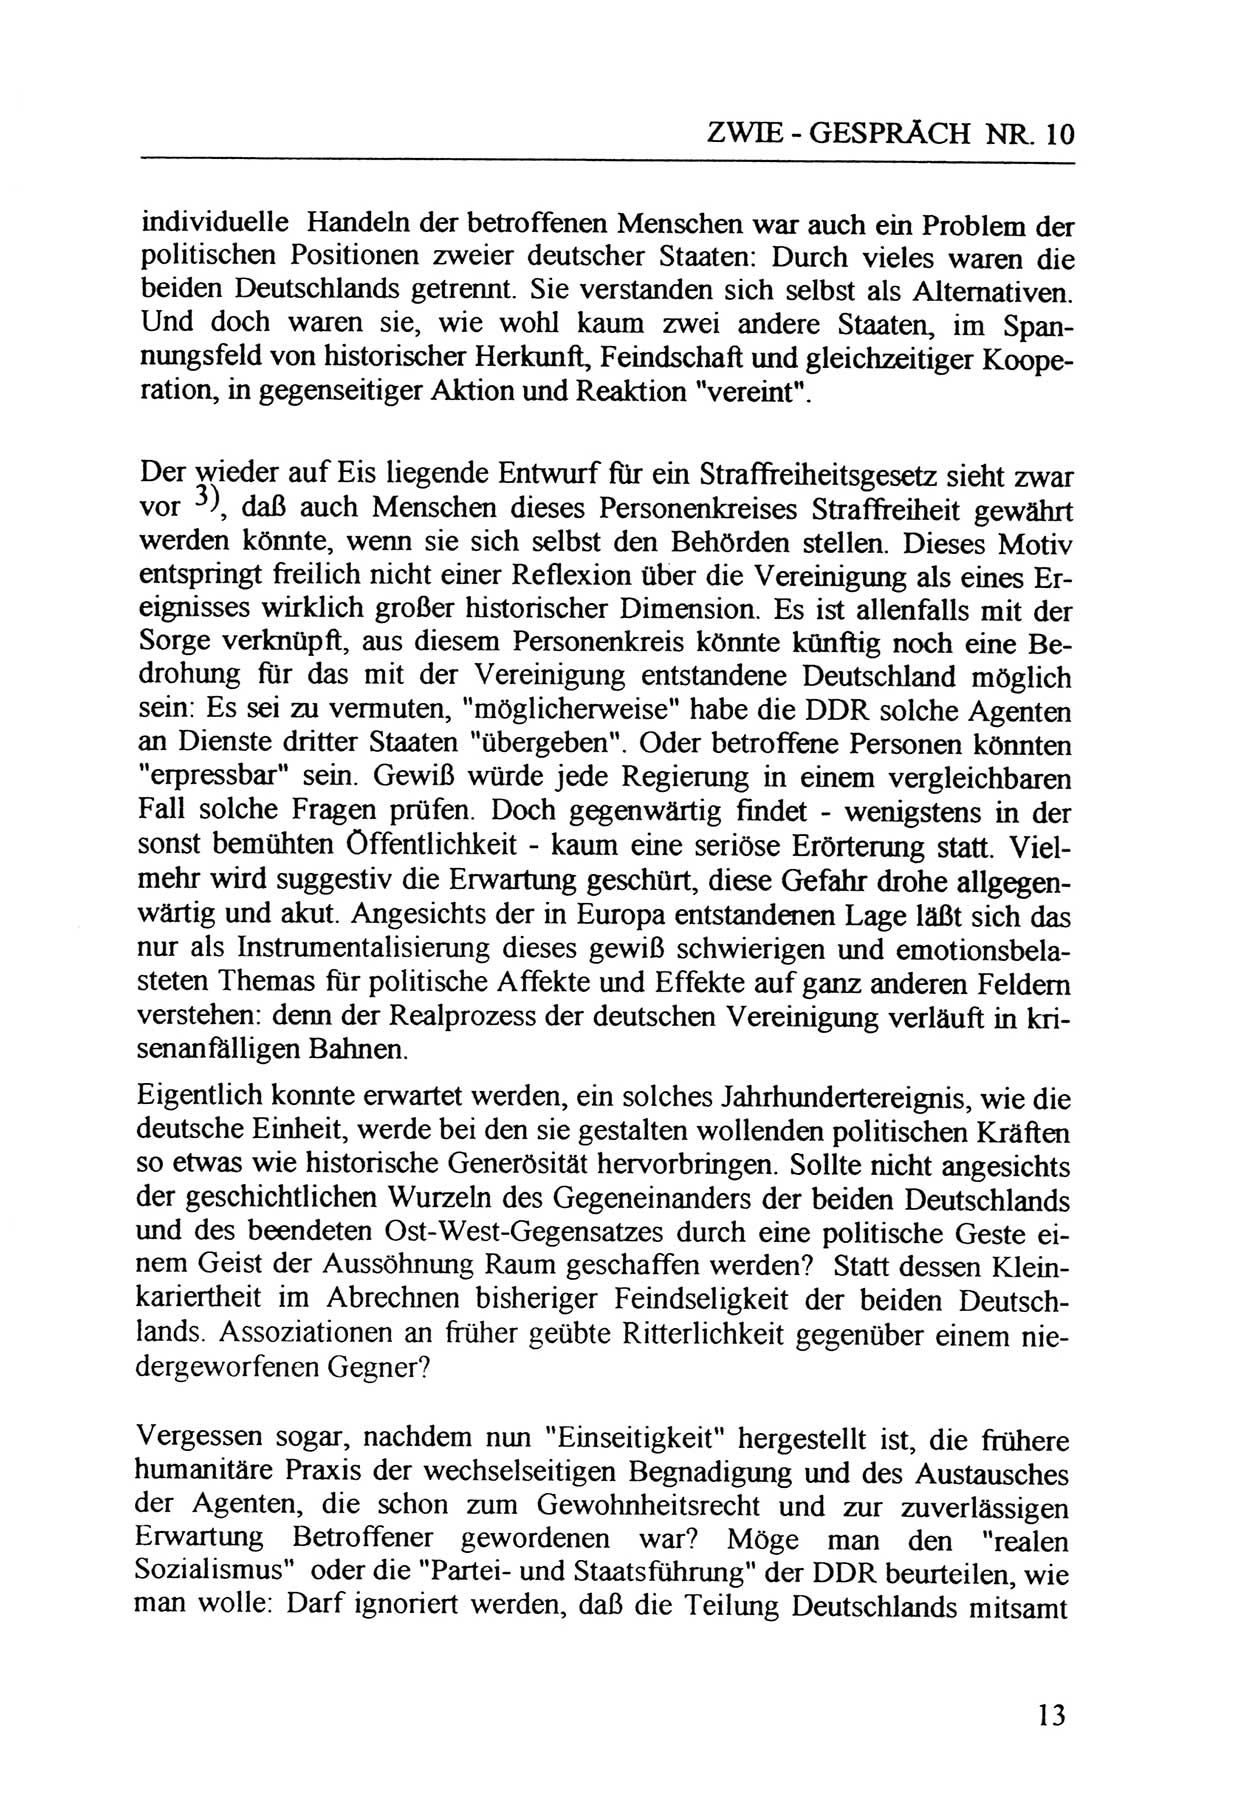 Zwie-Gespräch, Beiträge zur Aufarbeitung der Staatssicherheits-Vergangenheit [Deutsche Demokratische Republik (DDR)], Ausgabe Nr. 10, Berlin 1992, Seite 13 (Zwie-Gespr. Ausg. 10 1992, S. 13)